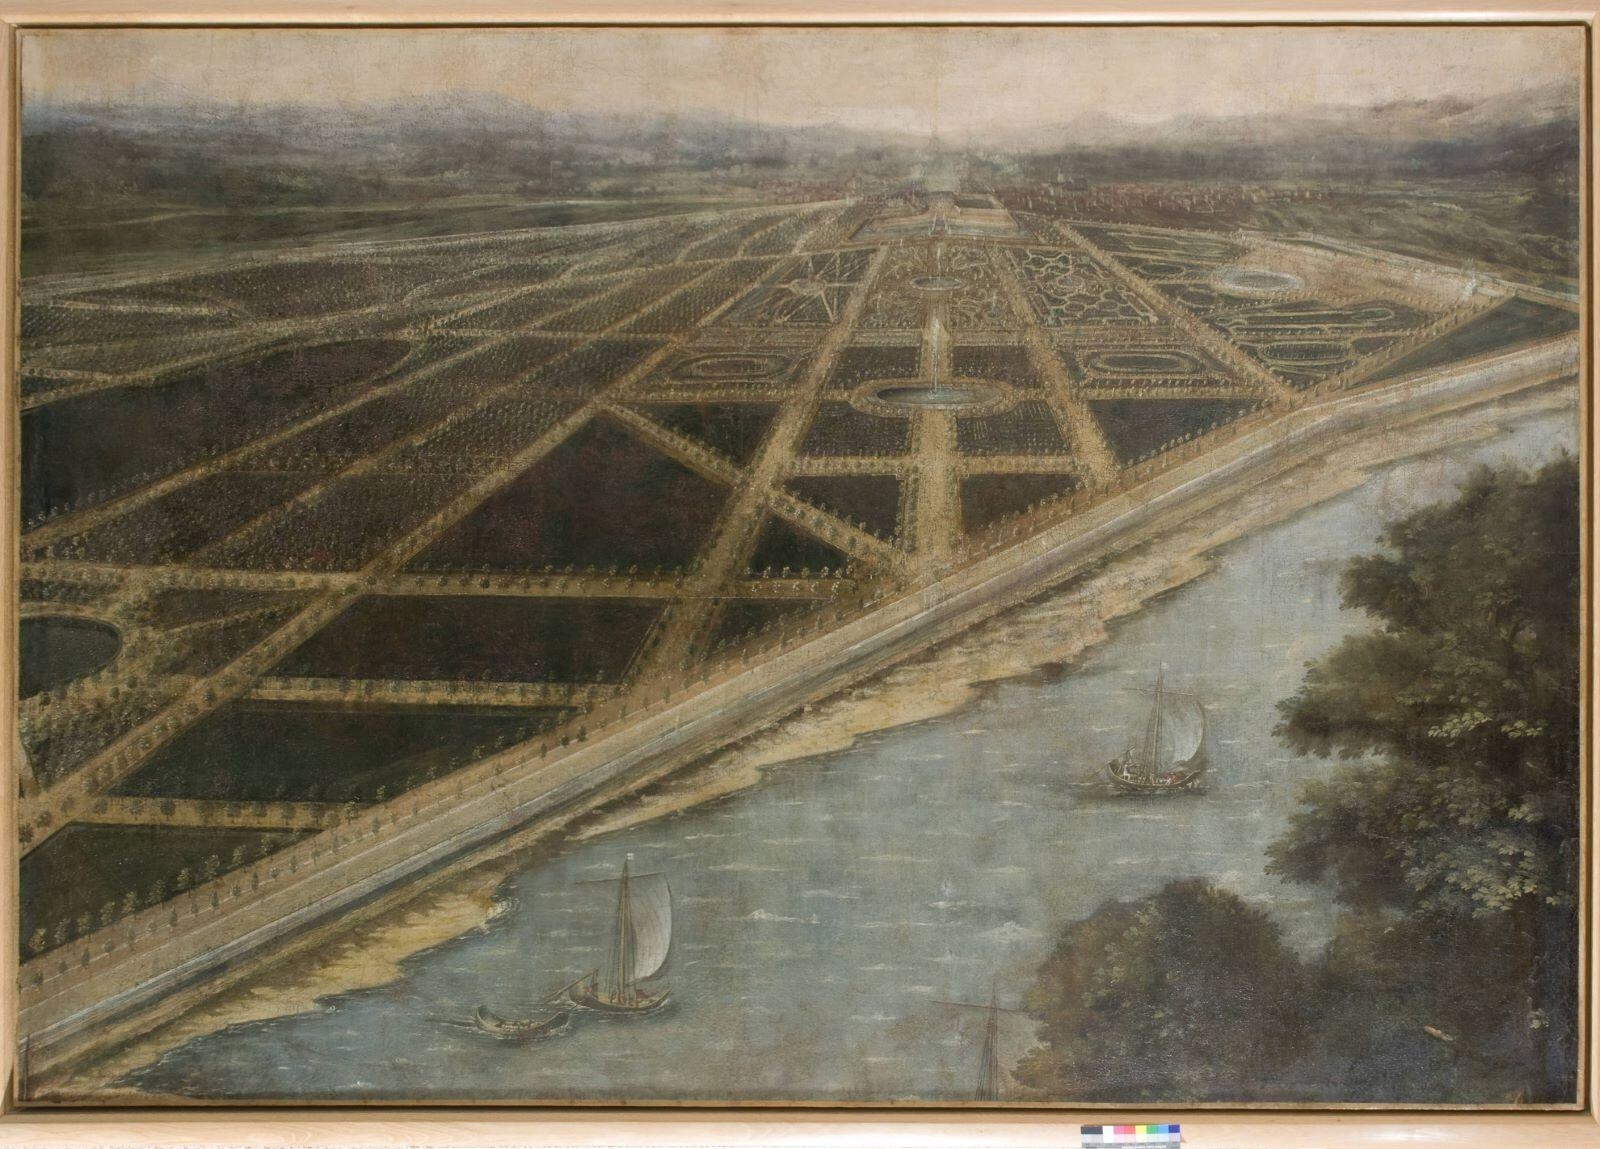 Vue du château de Châteauneuf-sur-Loire et de ses jardins à la fin du XVIIème siècle (titre factice)